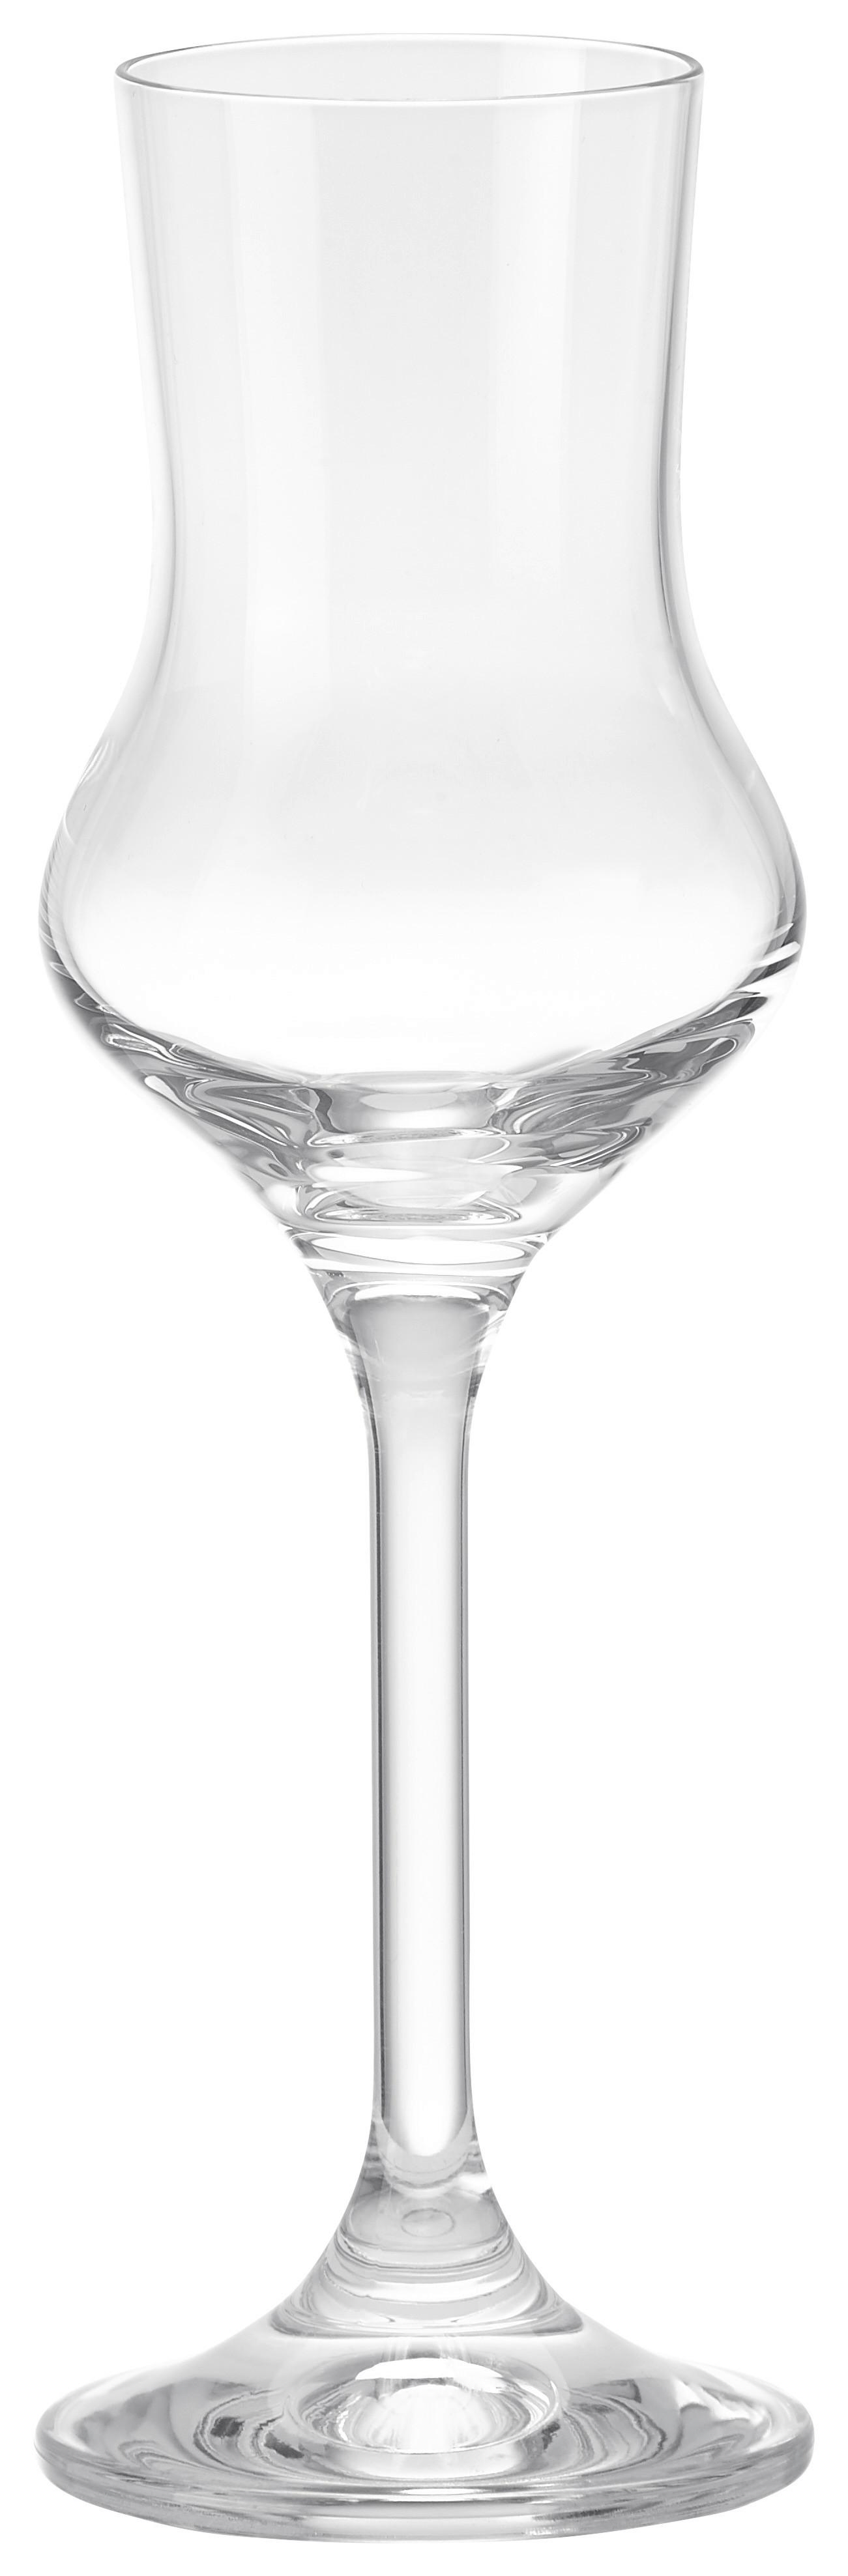 Pahar pentru țuică Treviso - clar, sticlă (0,08l) - Bohemia